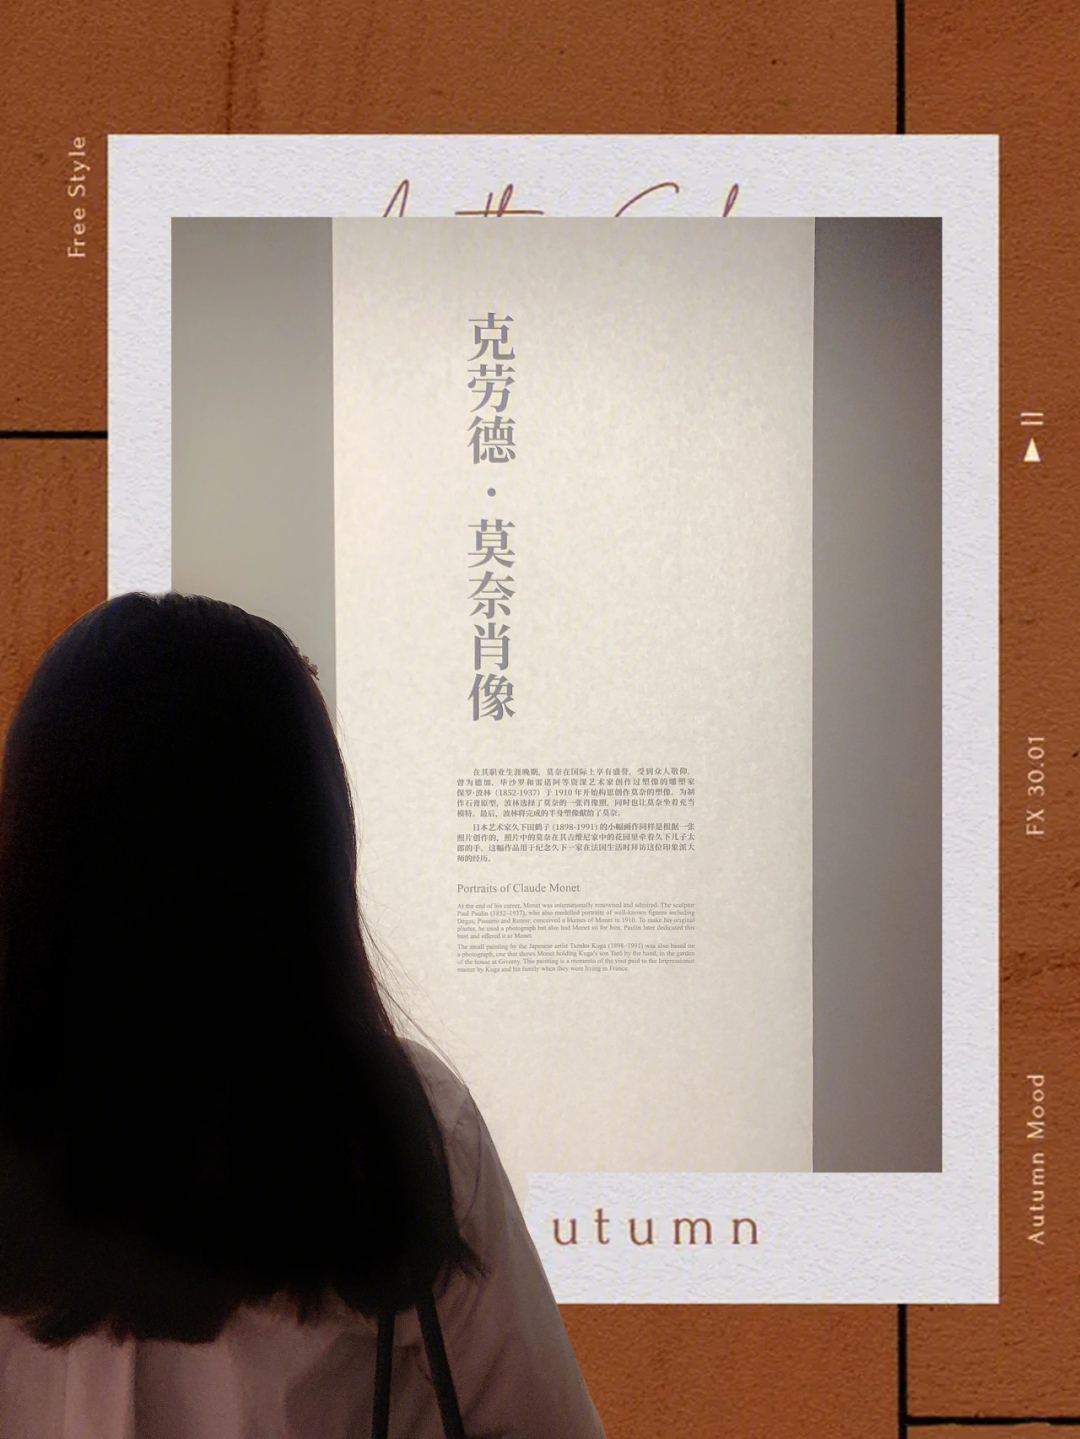 上海莫奈画展2021海报图片